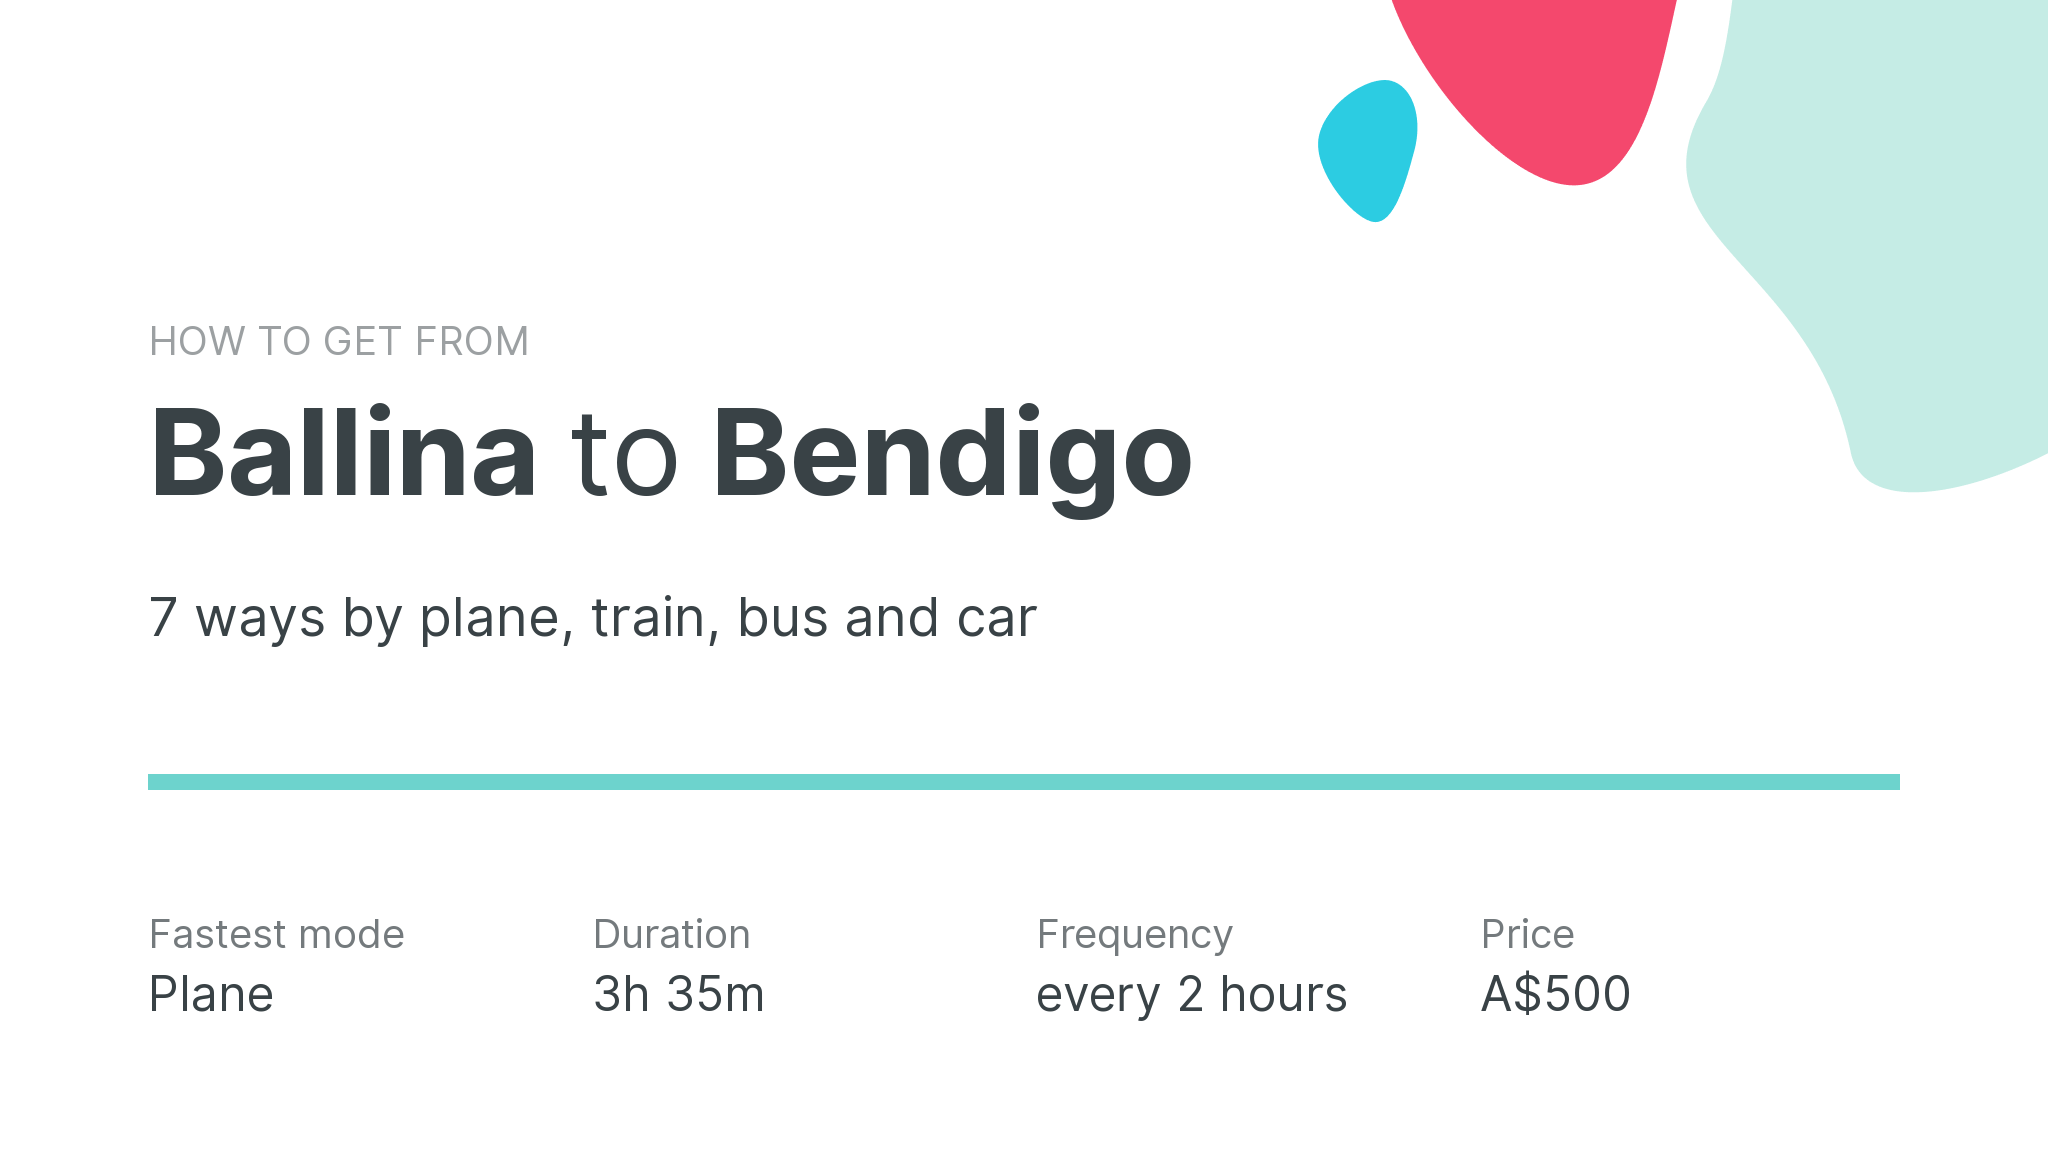 How do I get from Ballina to Bendigo